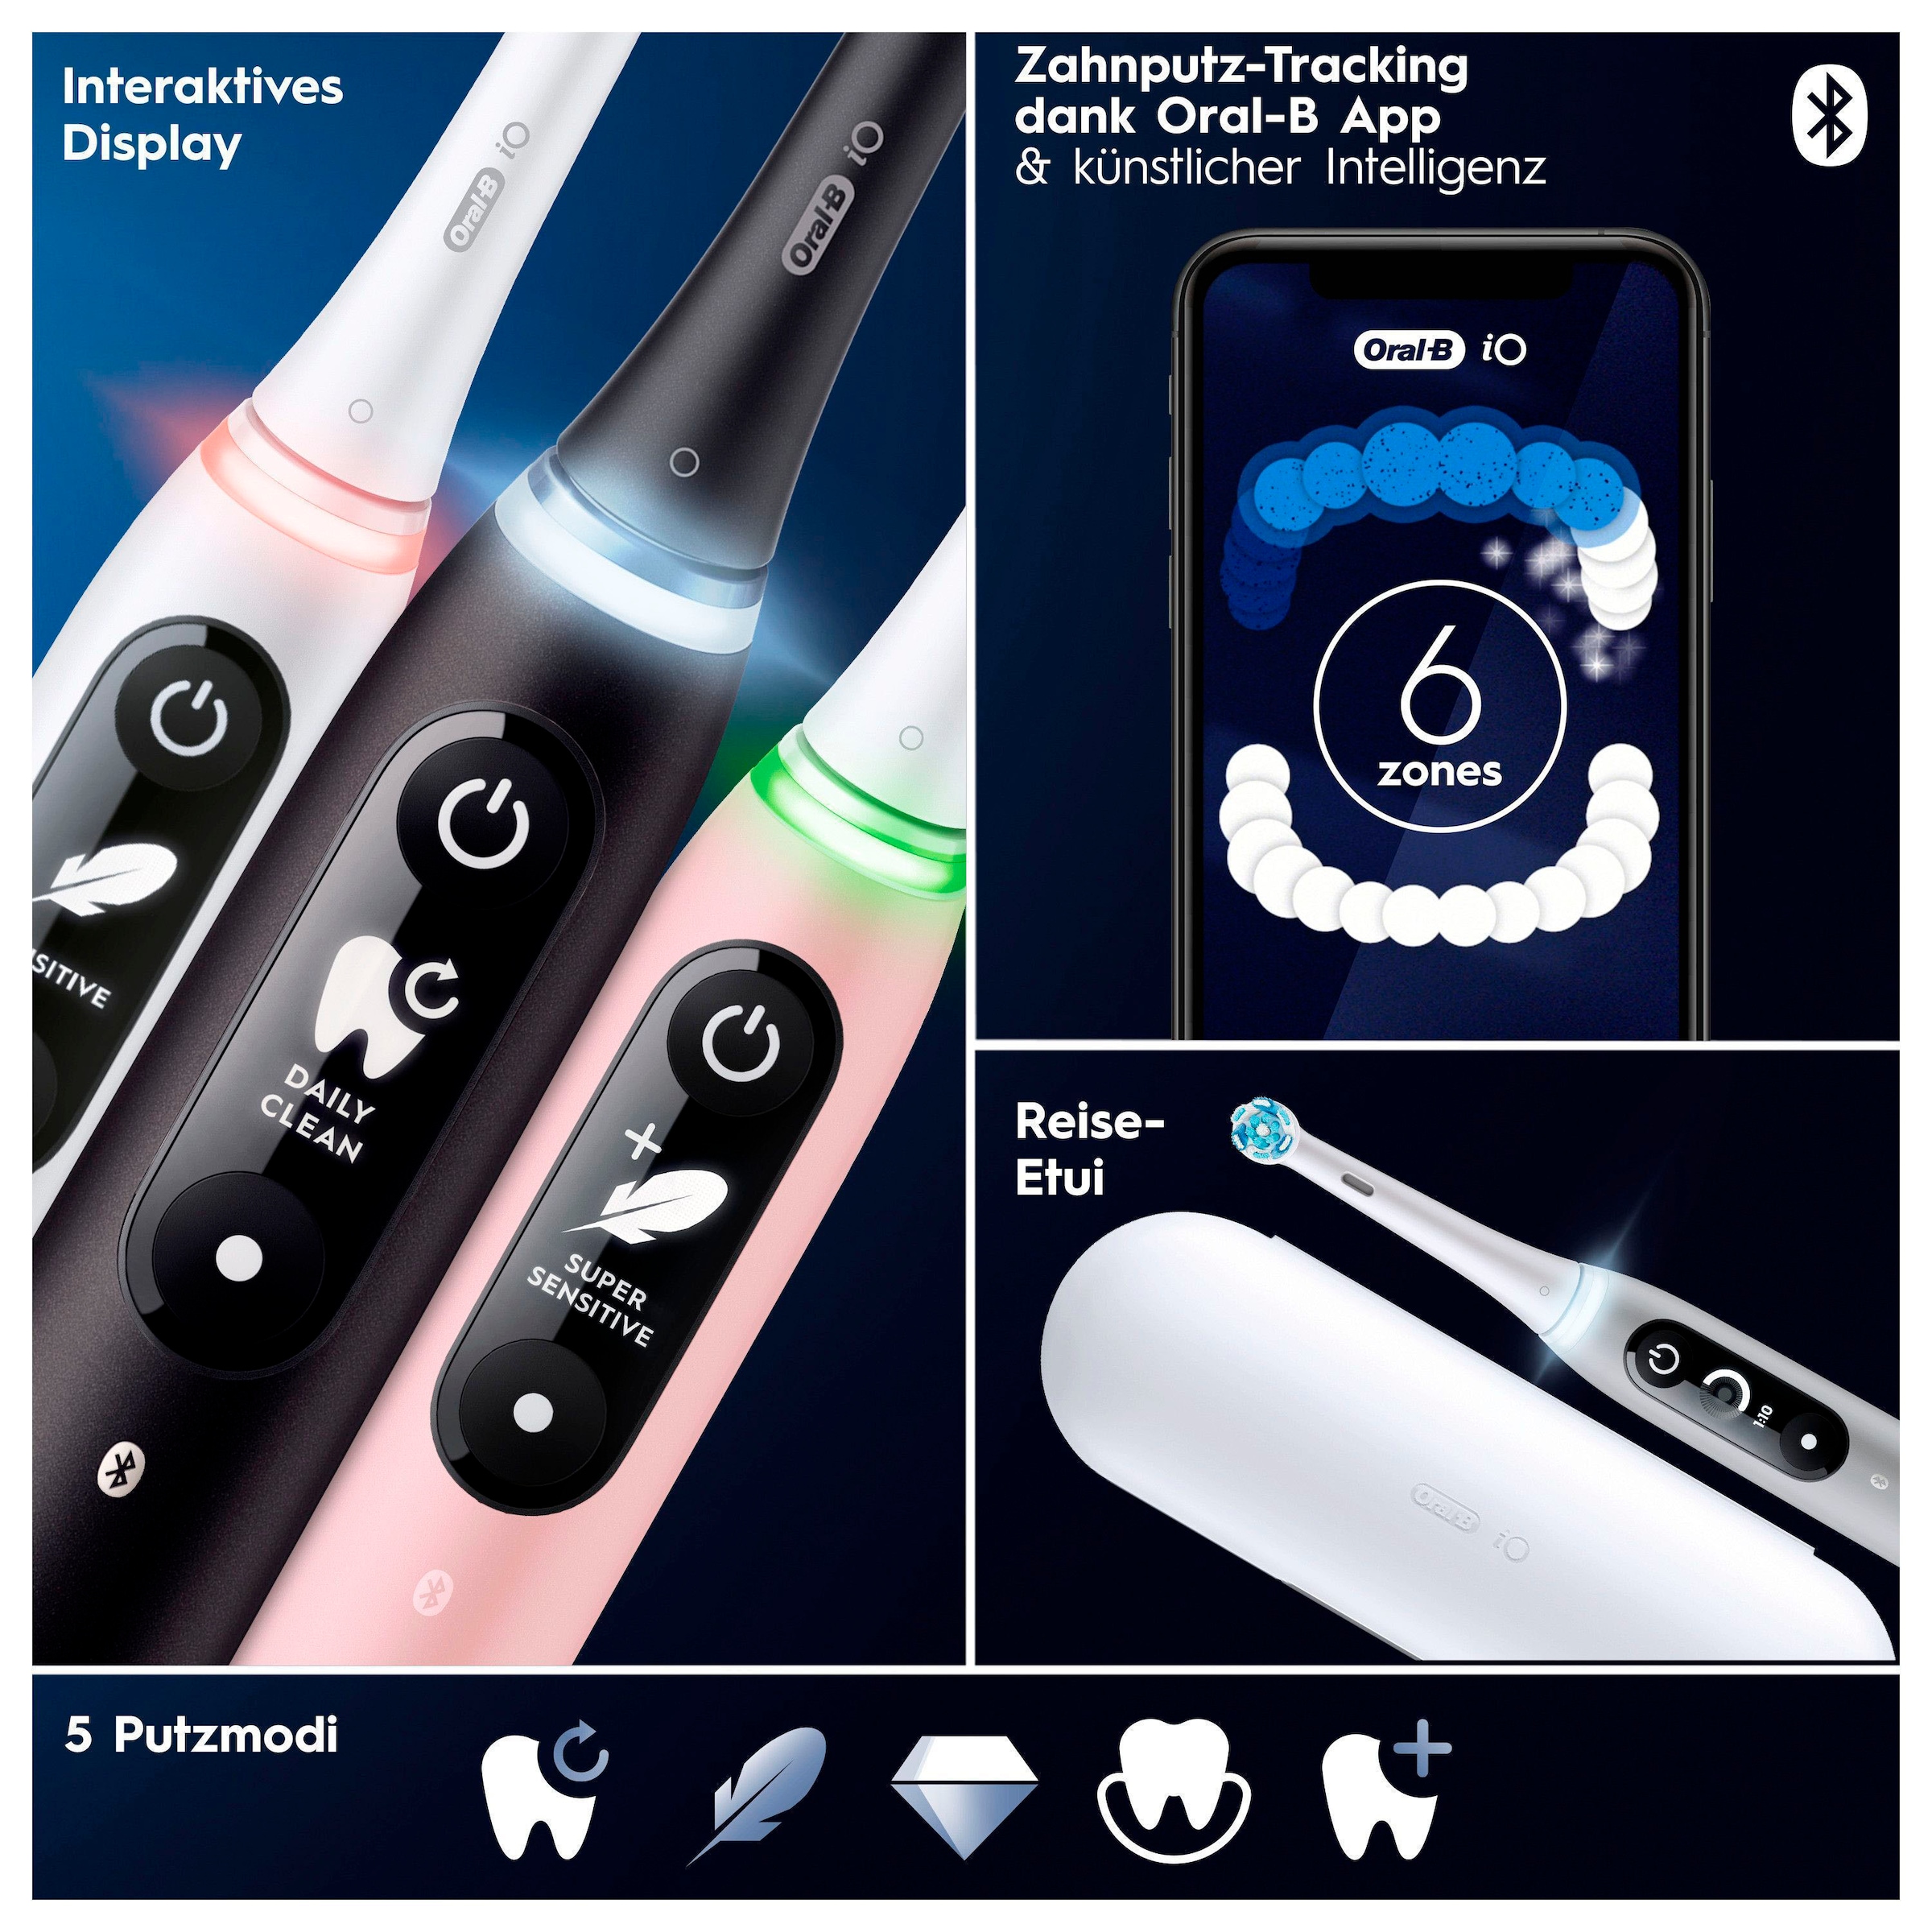 Oral-B Elektrische Zahnbürste »iO 6 Duopack«, 3 St. Aufsteckbürsten, mit Magnet-Technologie, Display, 5 Putzmodi